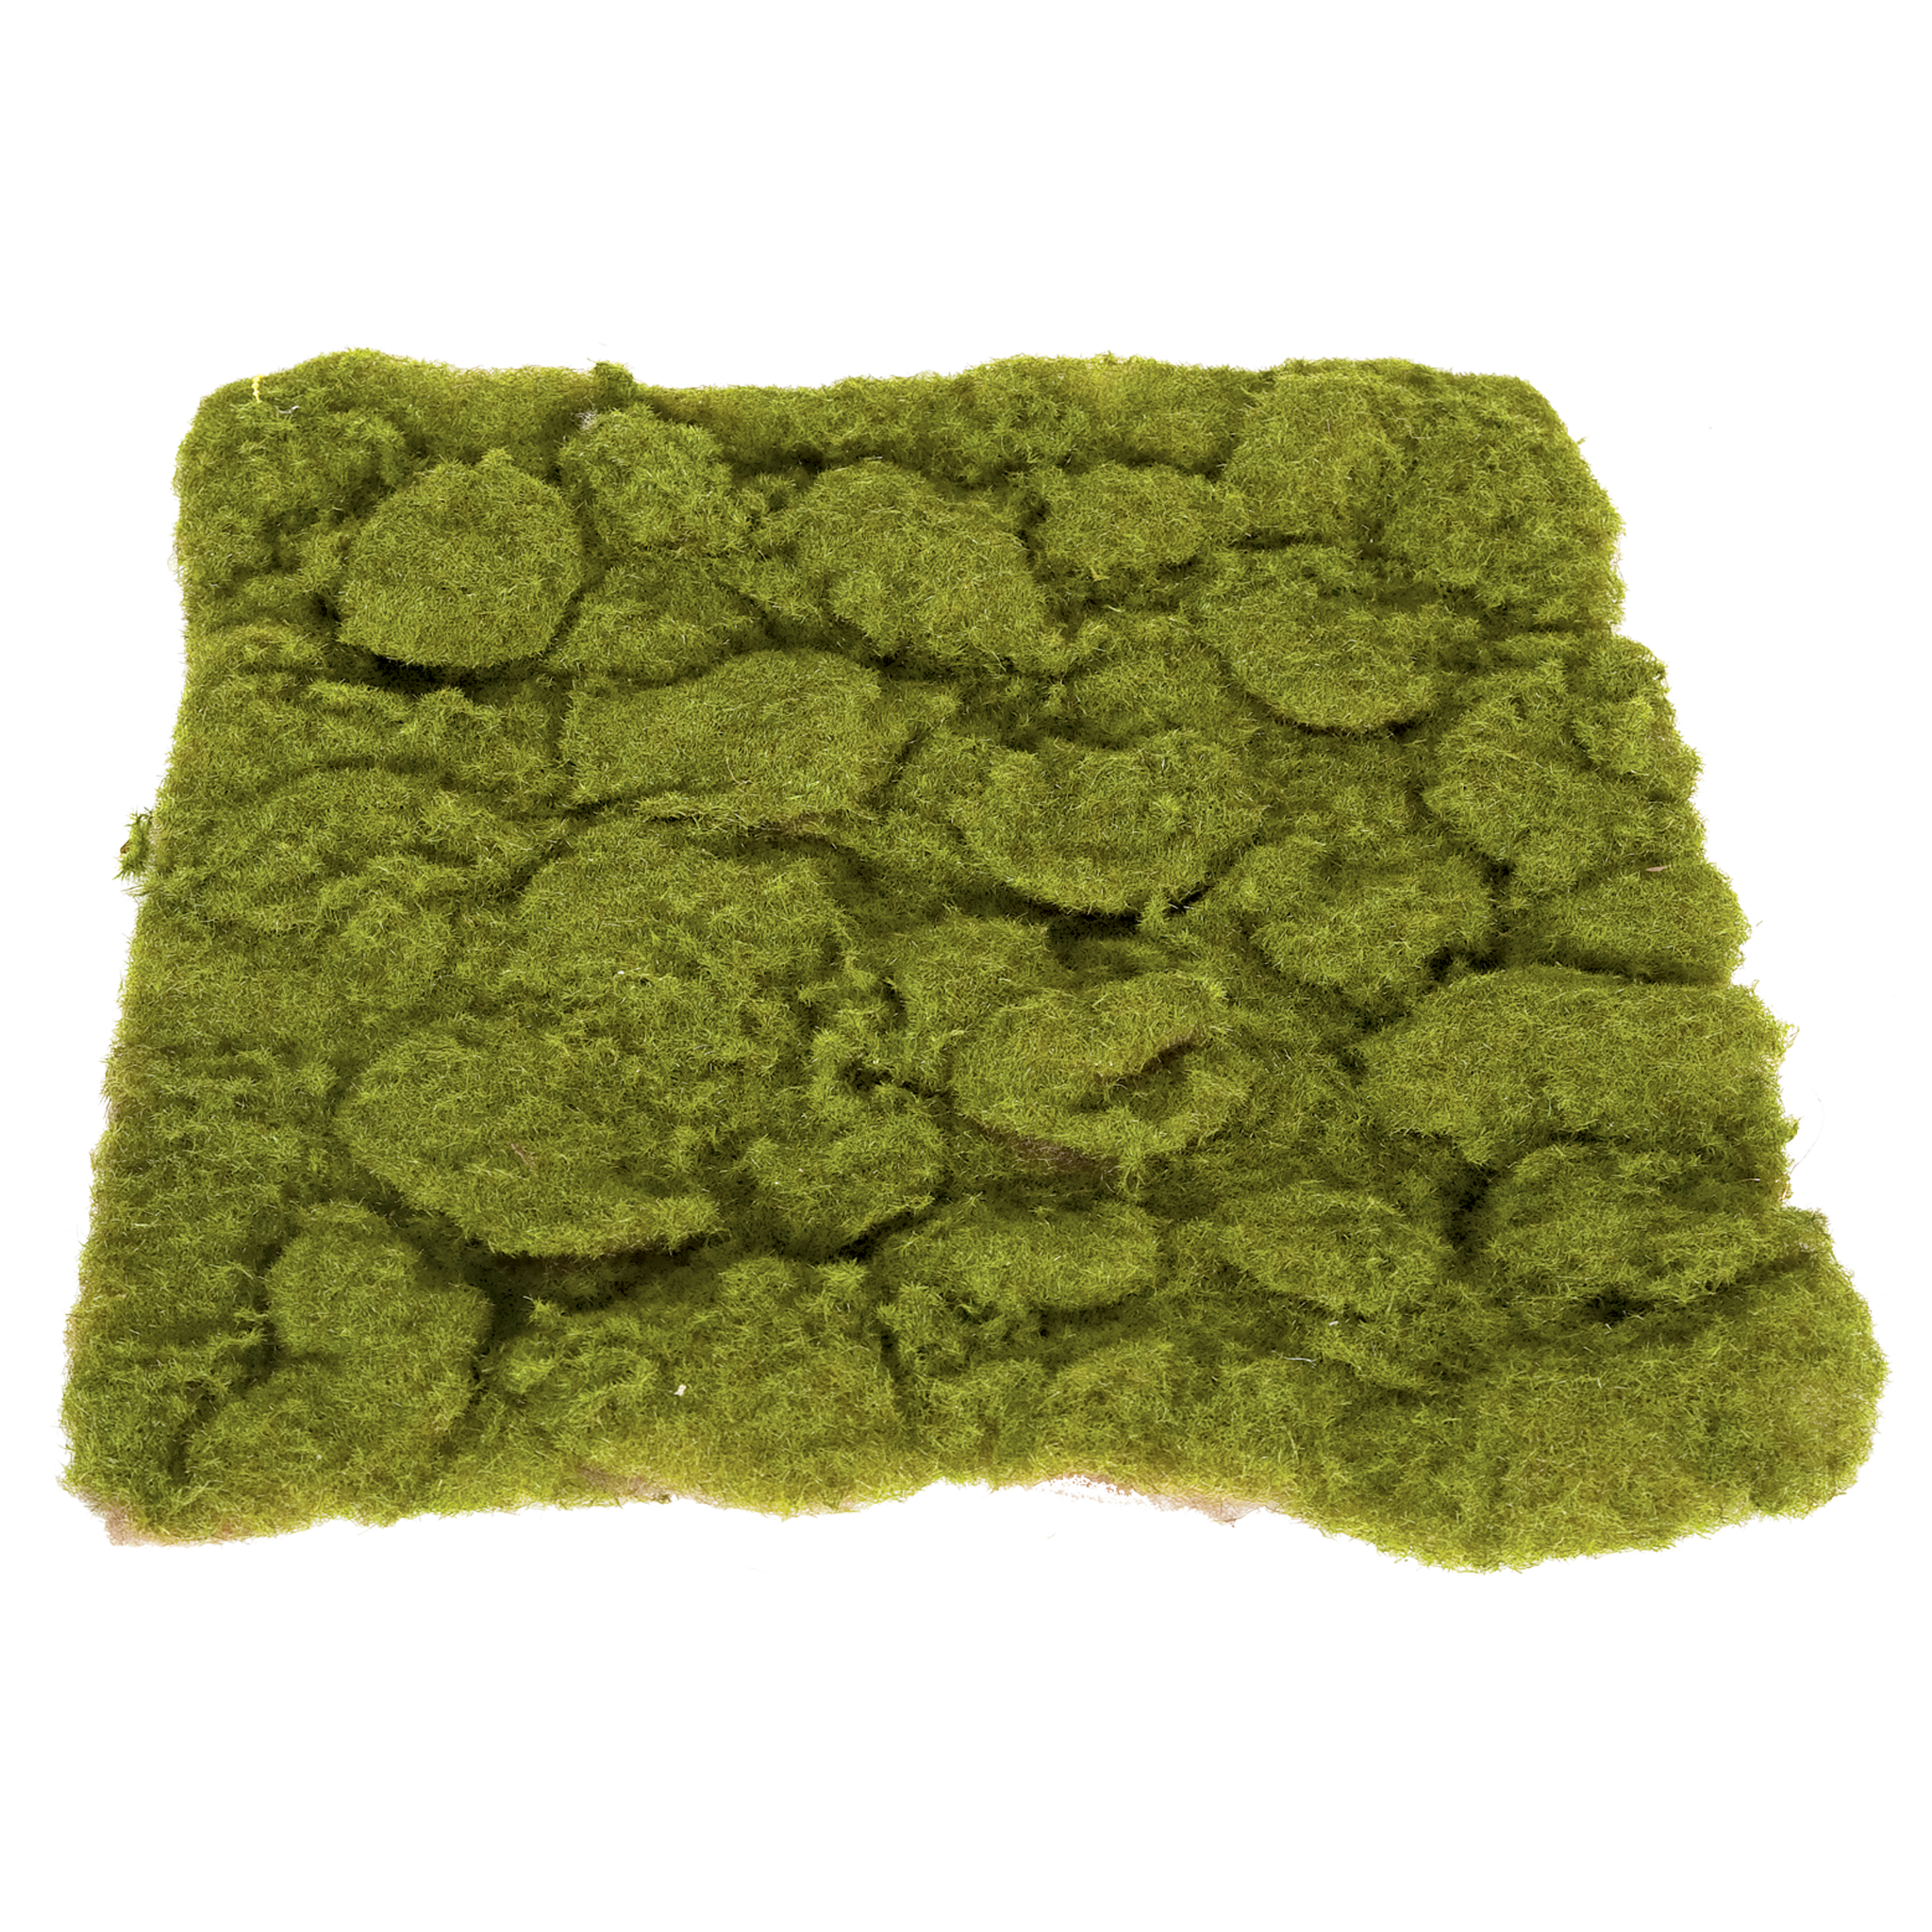 Thick Moss Mat (Green/Brown)